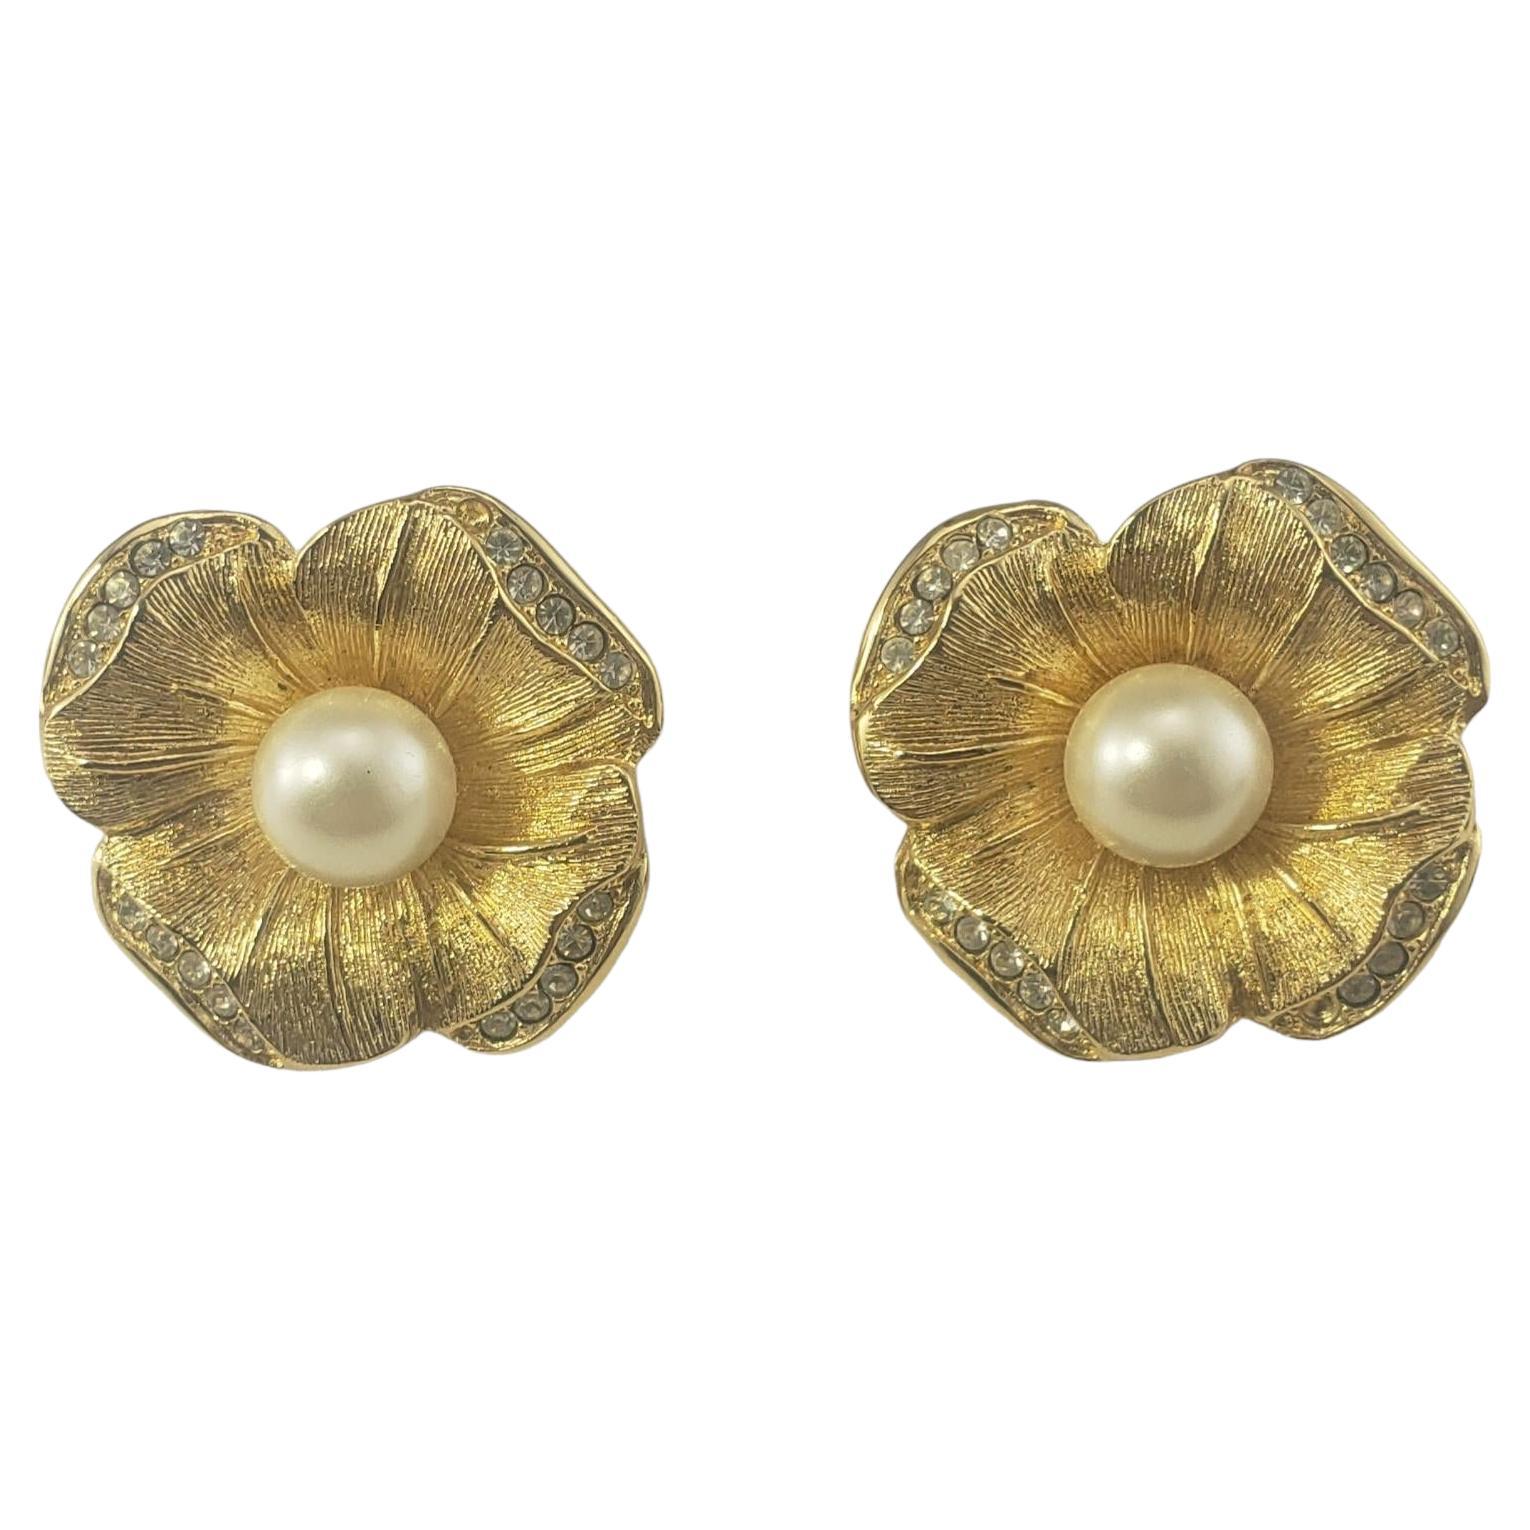 Christian Dior Flower Earrings #17100